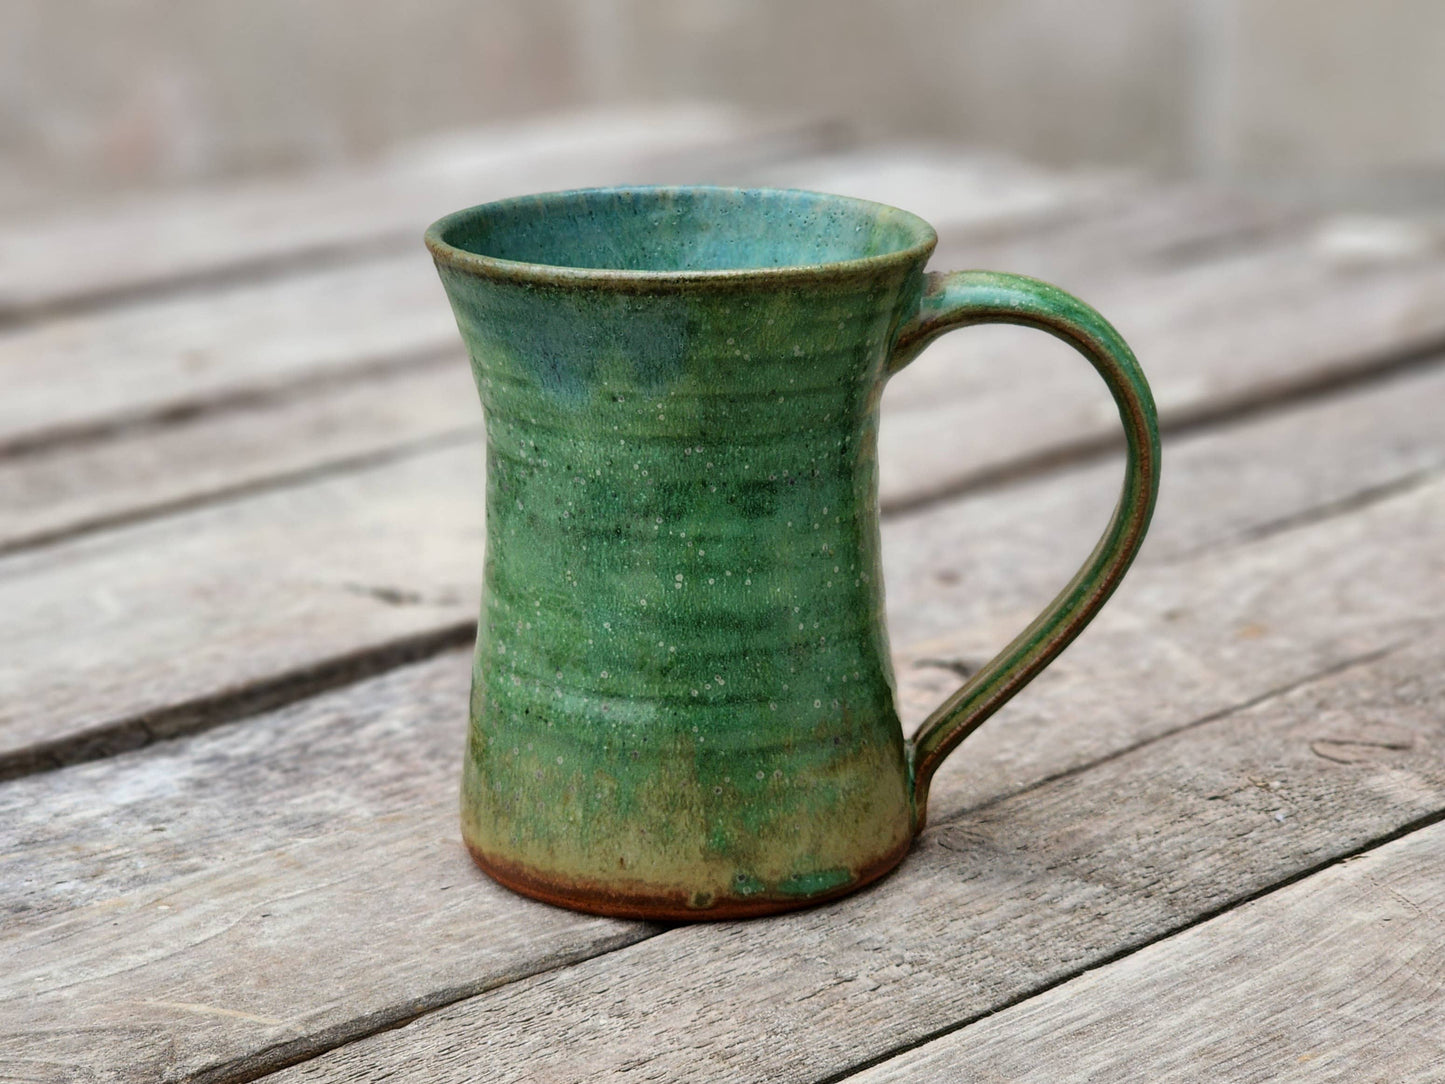 Dock 6 Pottery - Made to Order - Mug - Individual